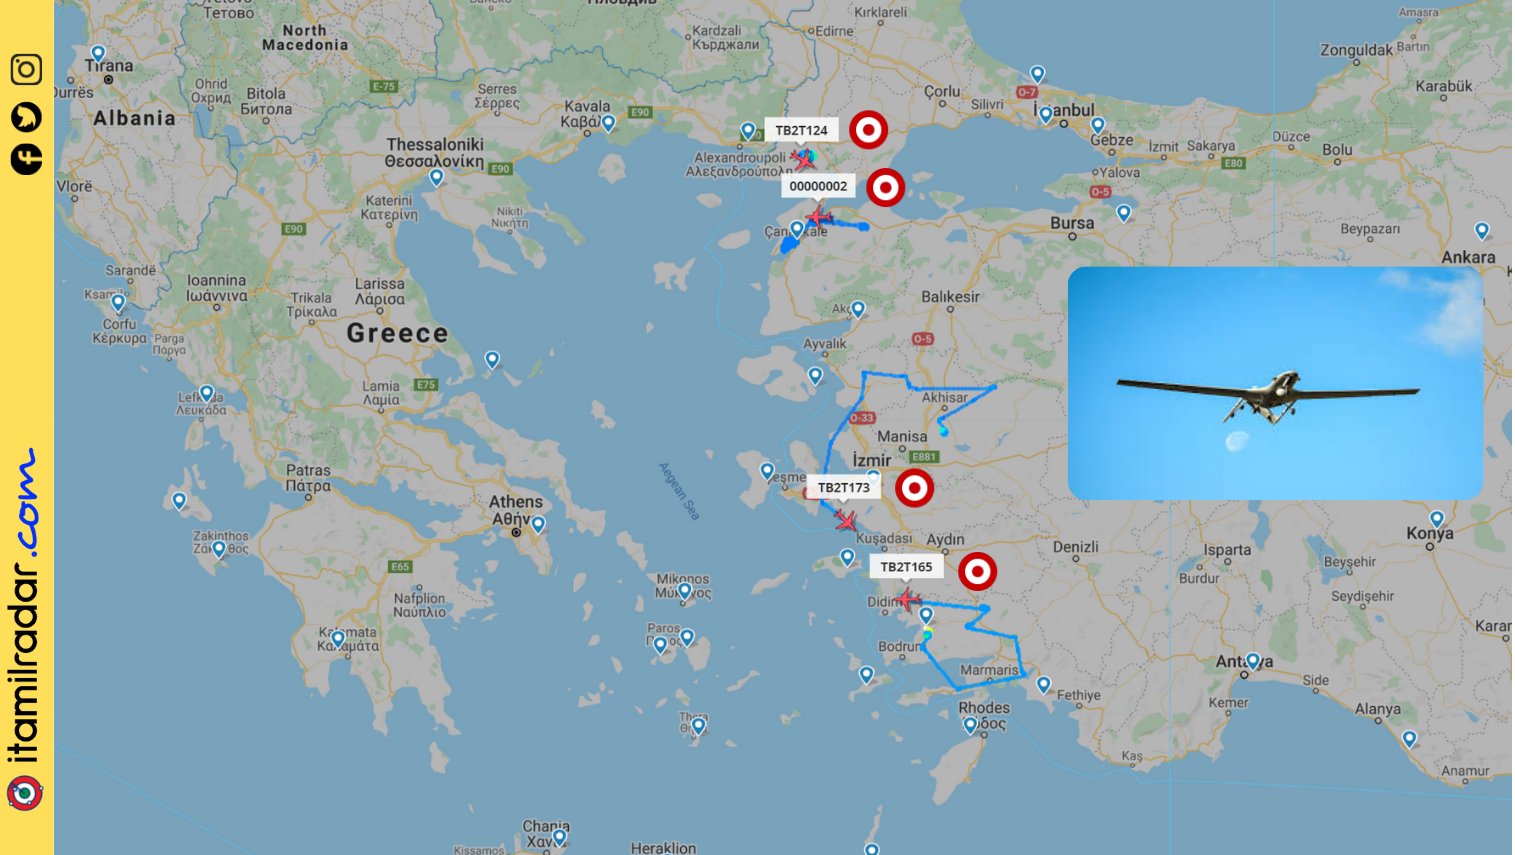 Tούρκοι: Έβγαλαν τα bayraktar στο Αιγαίο - Χρειάστηκε παρέμβαση ελληνικών F-16 